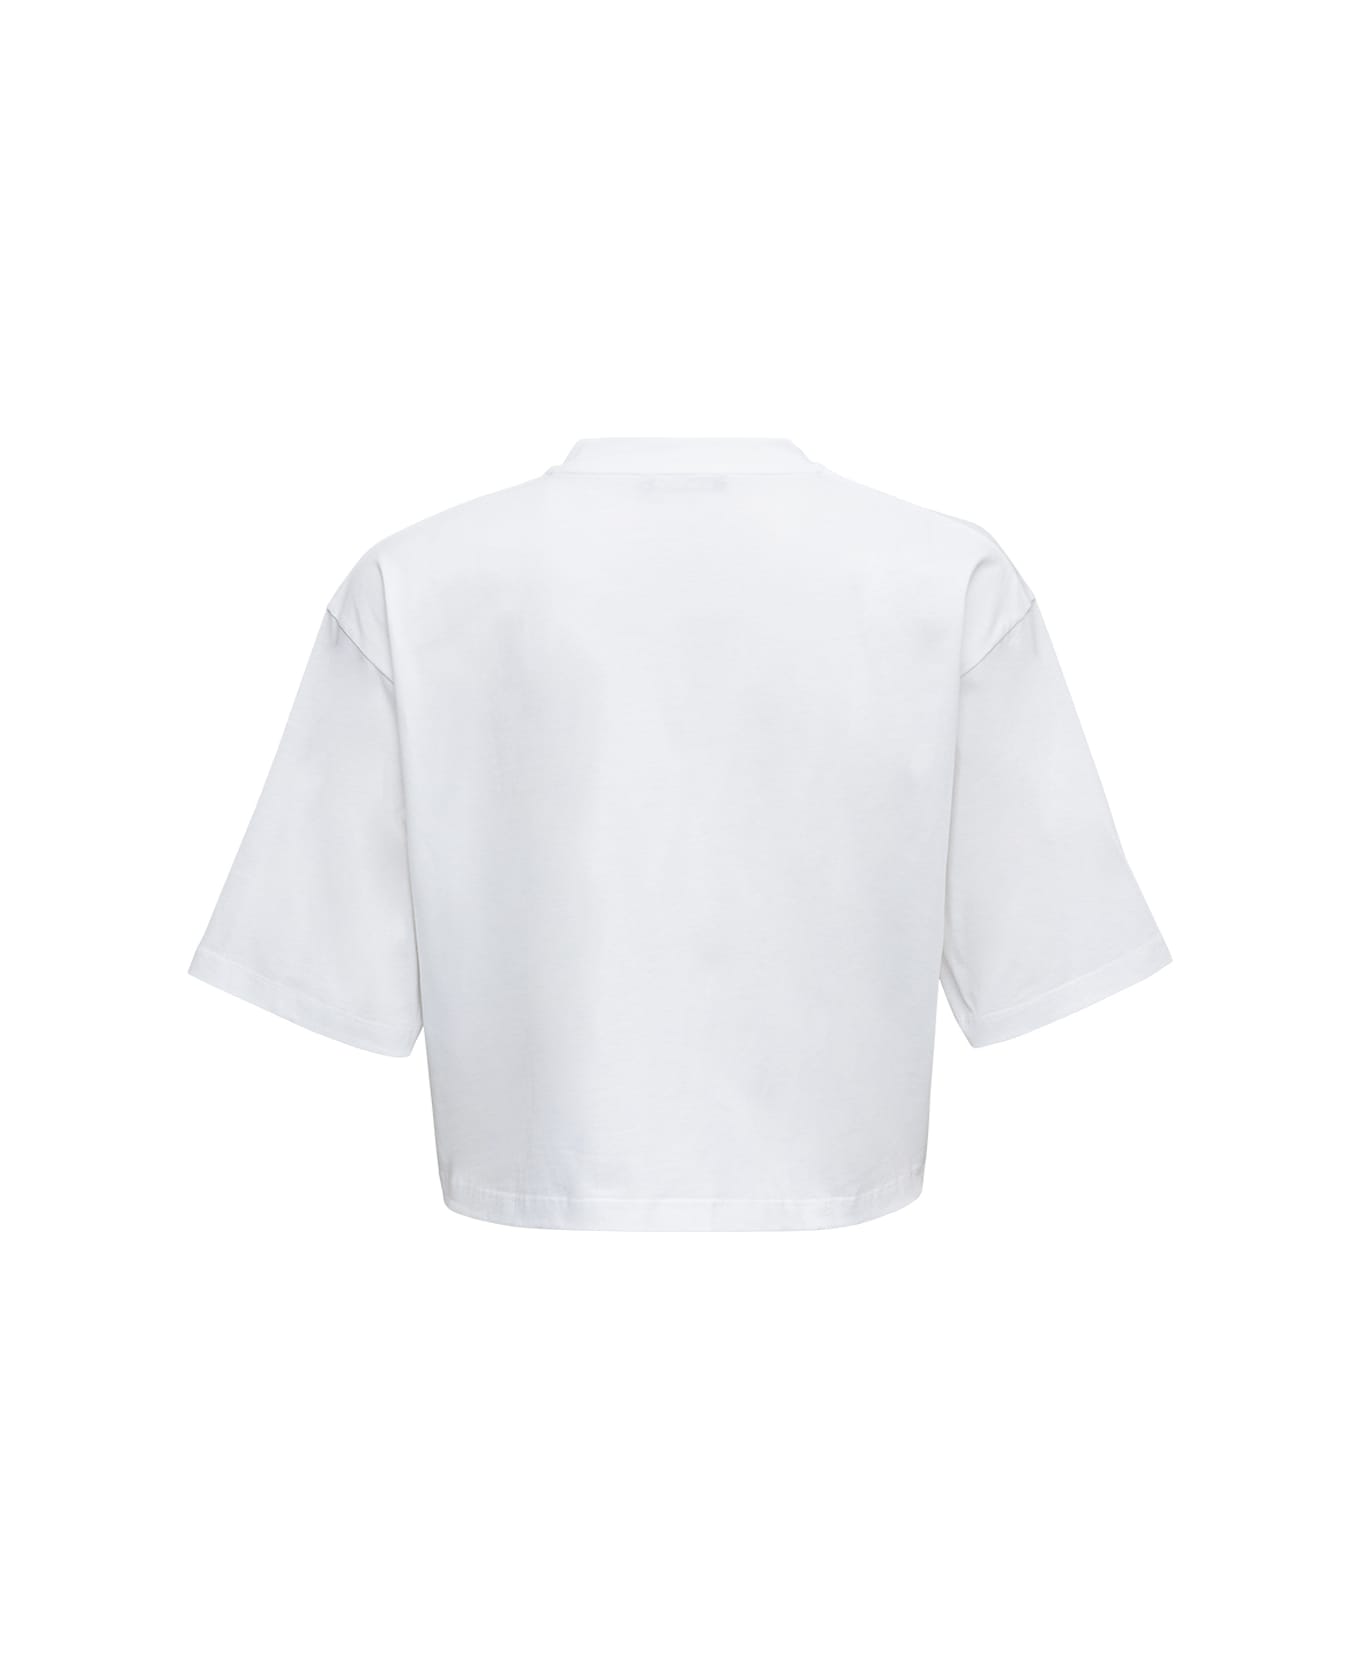 Balmain White Cotton Cropped T-shirt With Logo Print - White